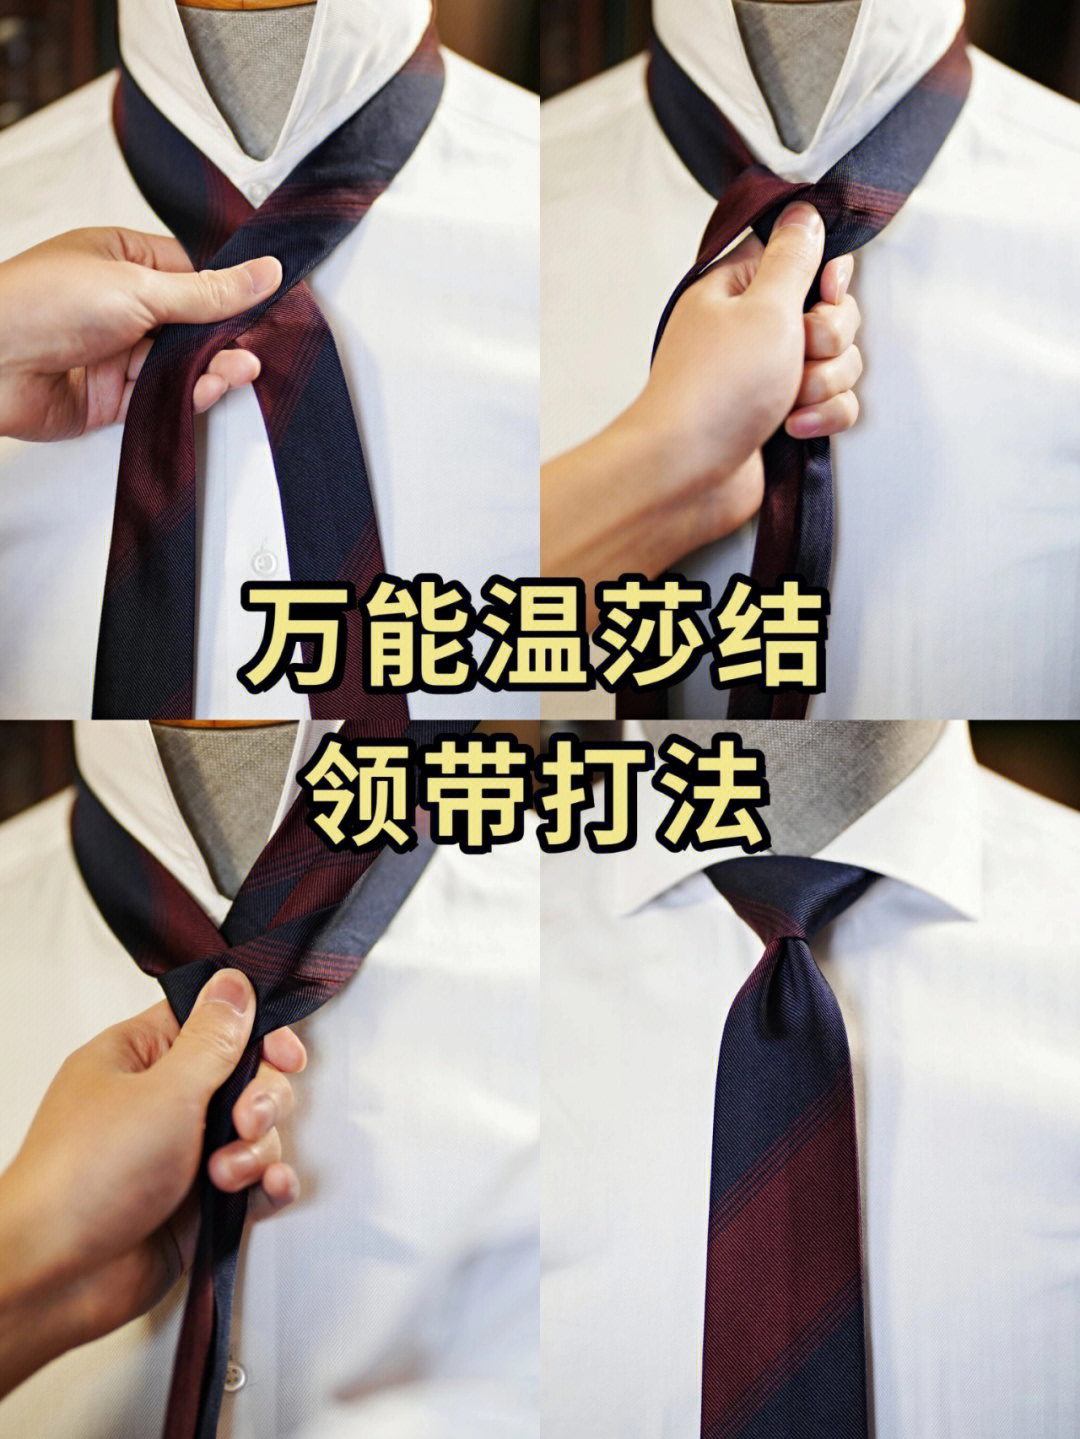 jk温莎结领带打法图片